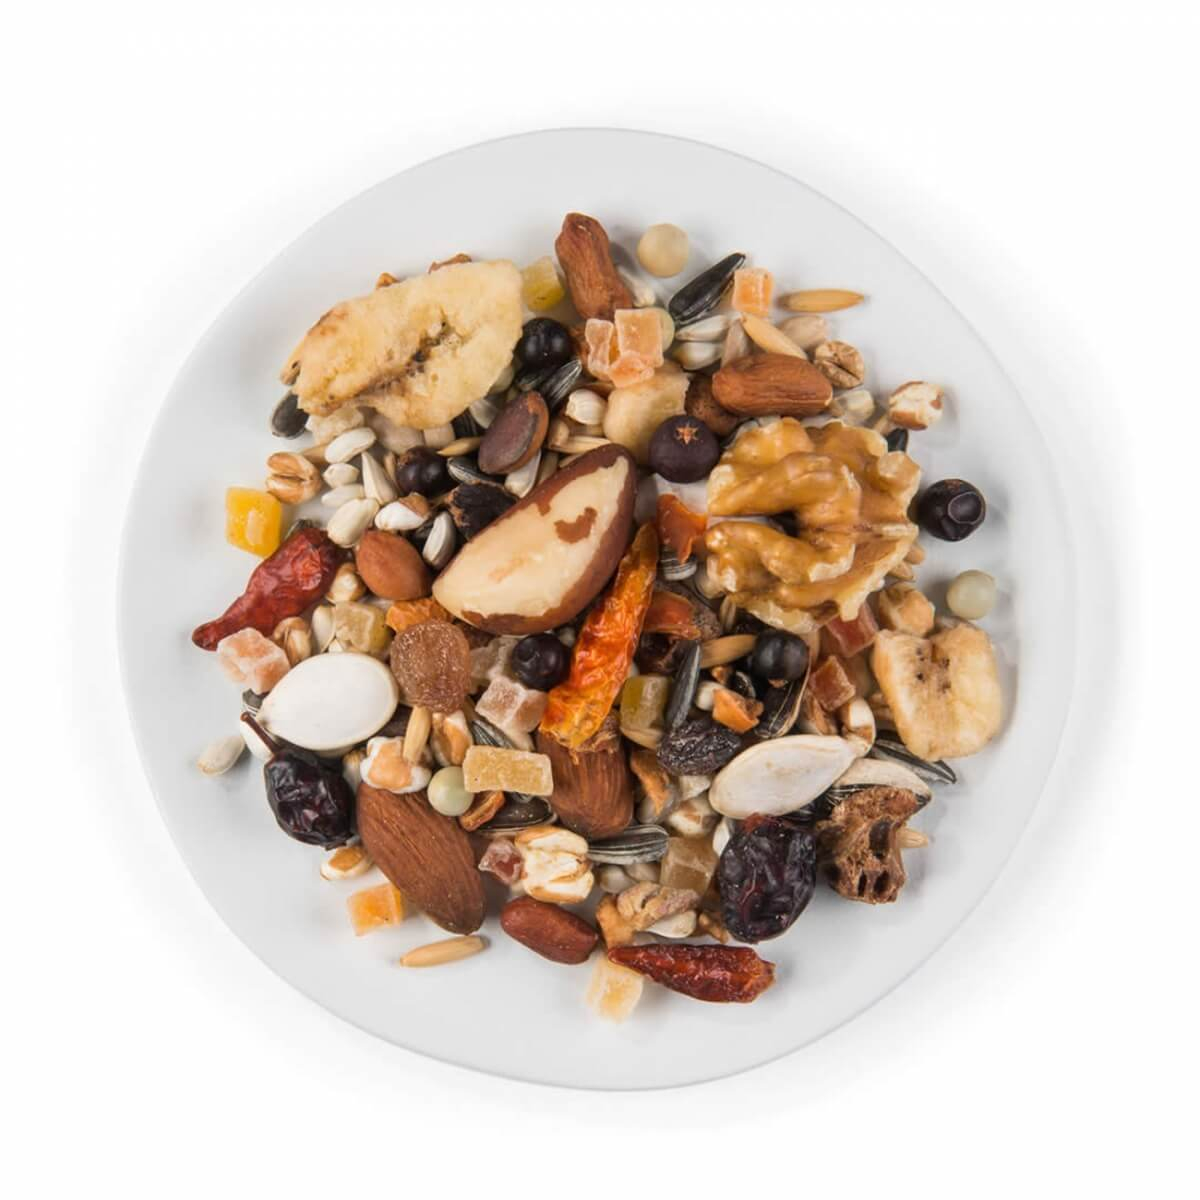  Witte Molen Puur Pauze Snack Mix Nueces y Frutas